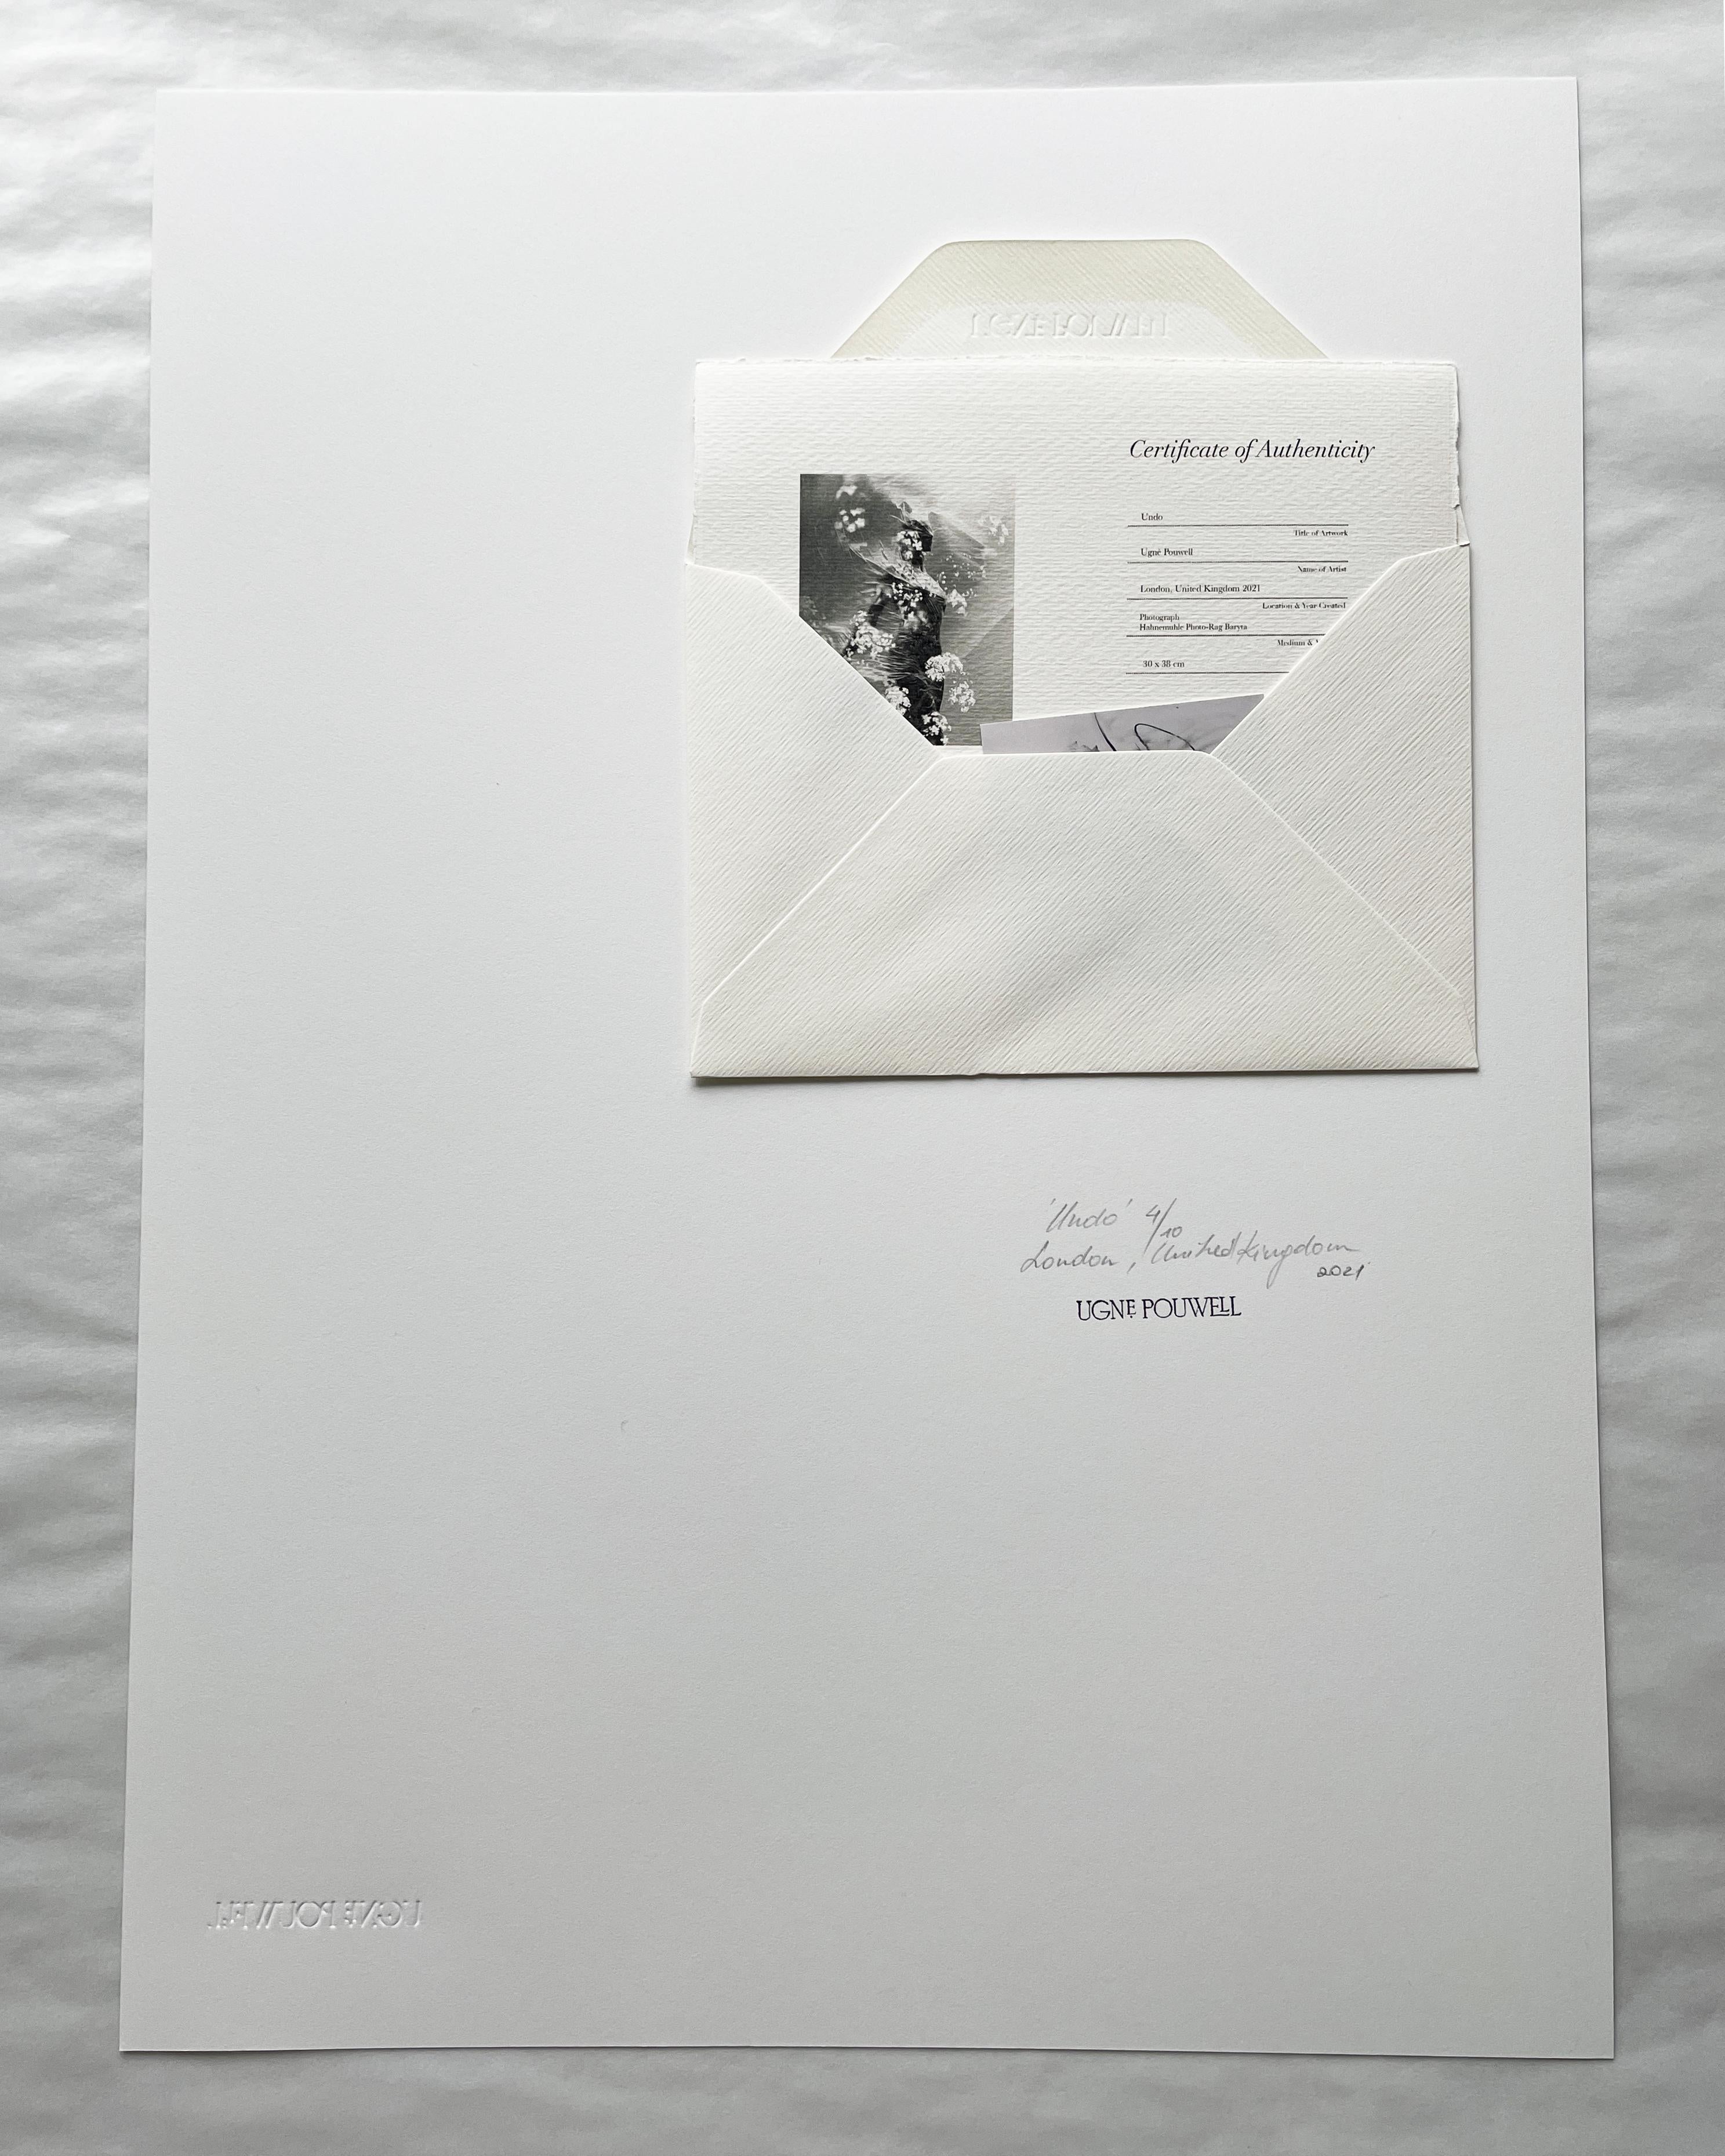 Undo - Analogue Schwarzer und weißer abstrakter Expressionismus, limitierte Auflage 5 von 10 Exemplaren (Abstrakter Expressionismus), Photograph, von Ugne Pouwell